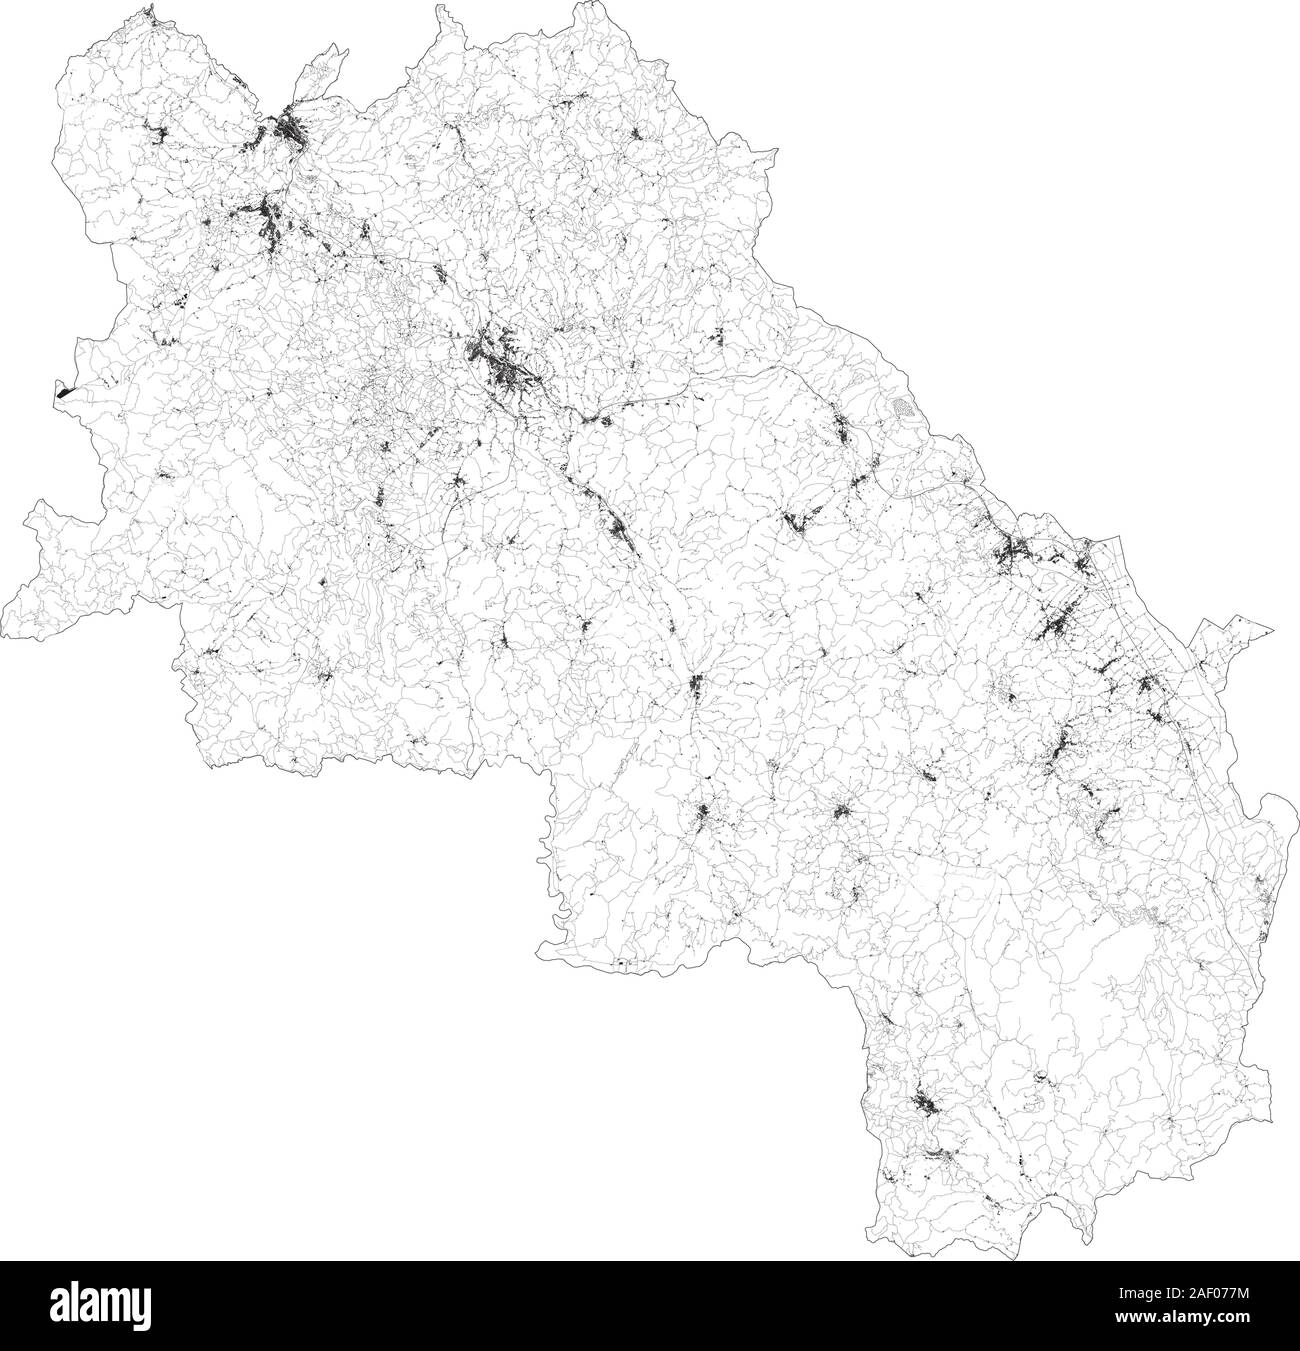 Sat-Karte der Provinz von Siena, Städte und Straßen, Gebäude und Straßen der Umgebung. Toskana, Italien. Karte Straßen, Ringstraßen Stock Vektor